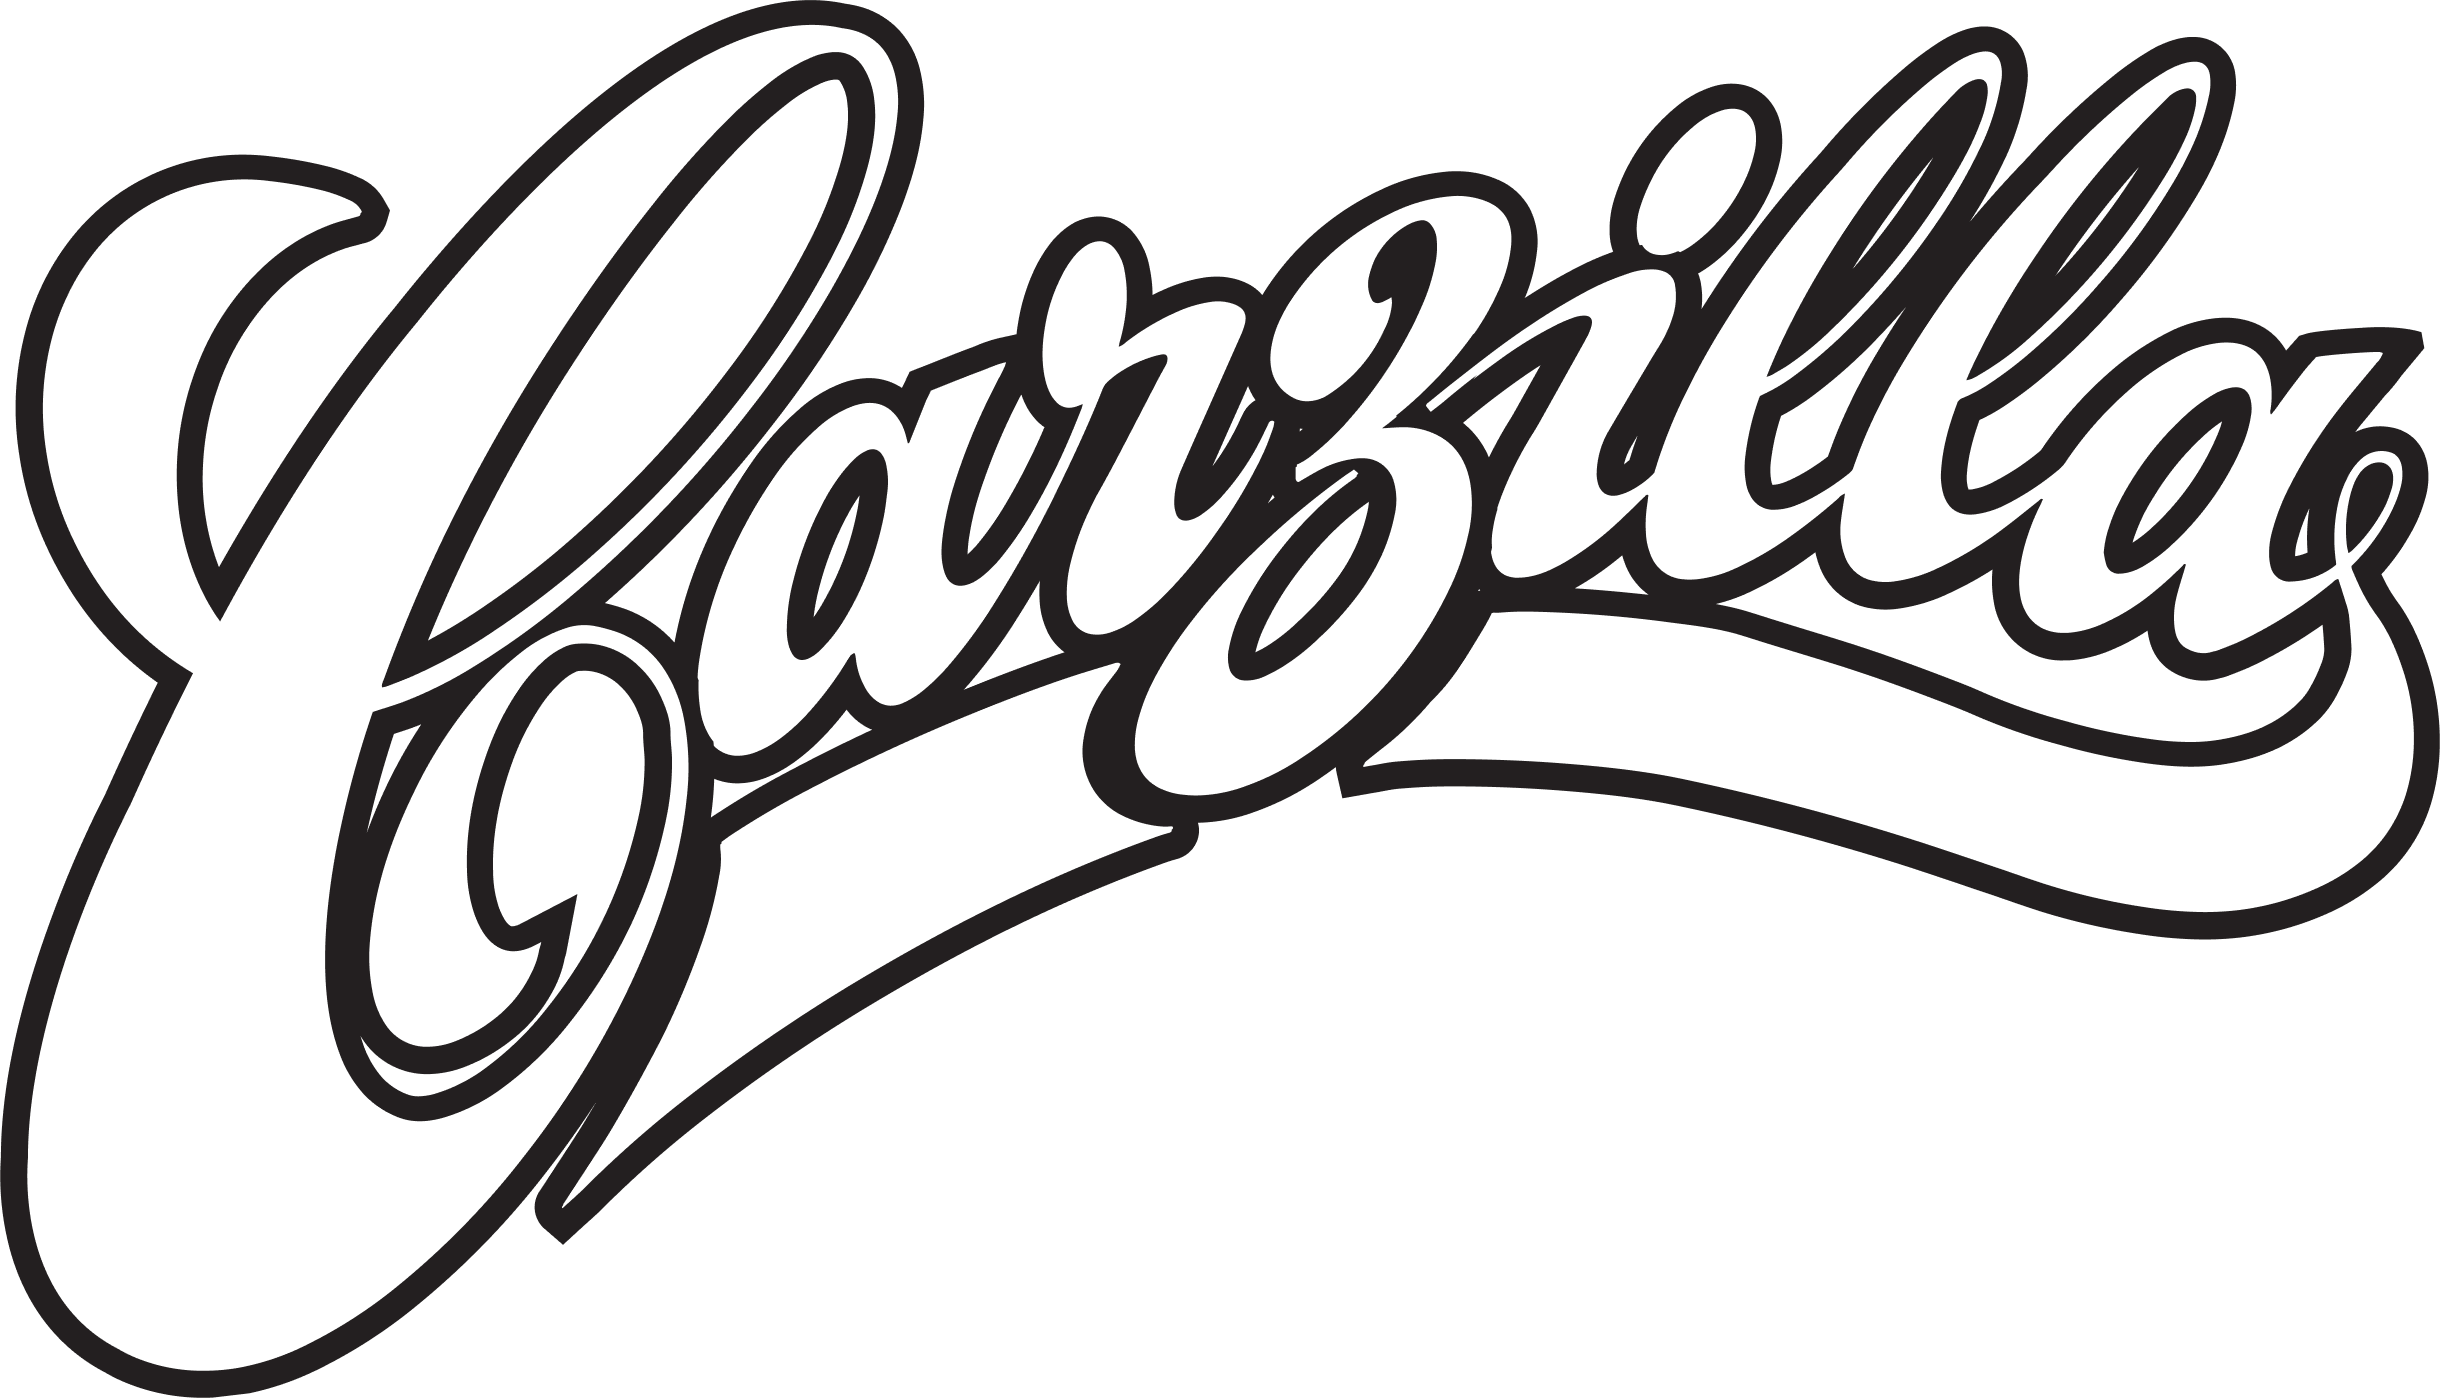 Carzilla logo